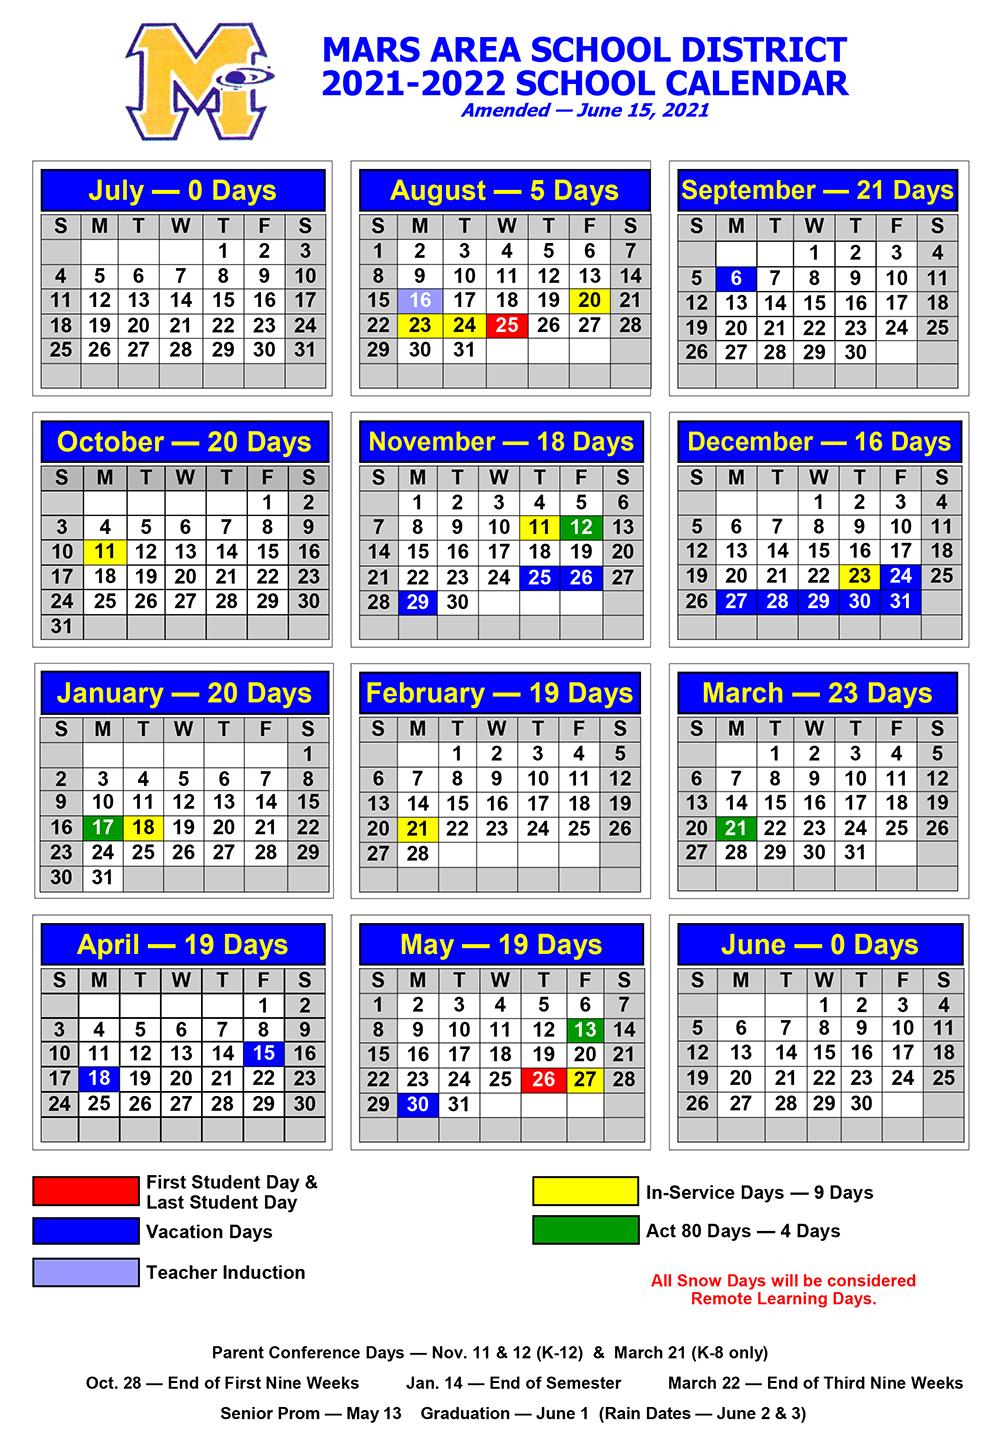 MASD Calendar 2021-2022 (Amended 06.15.21)